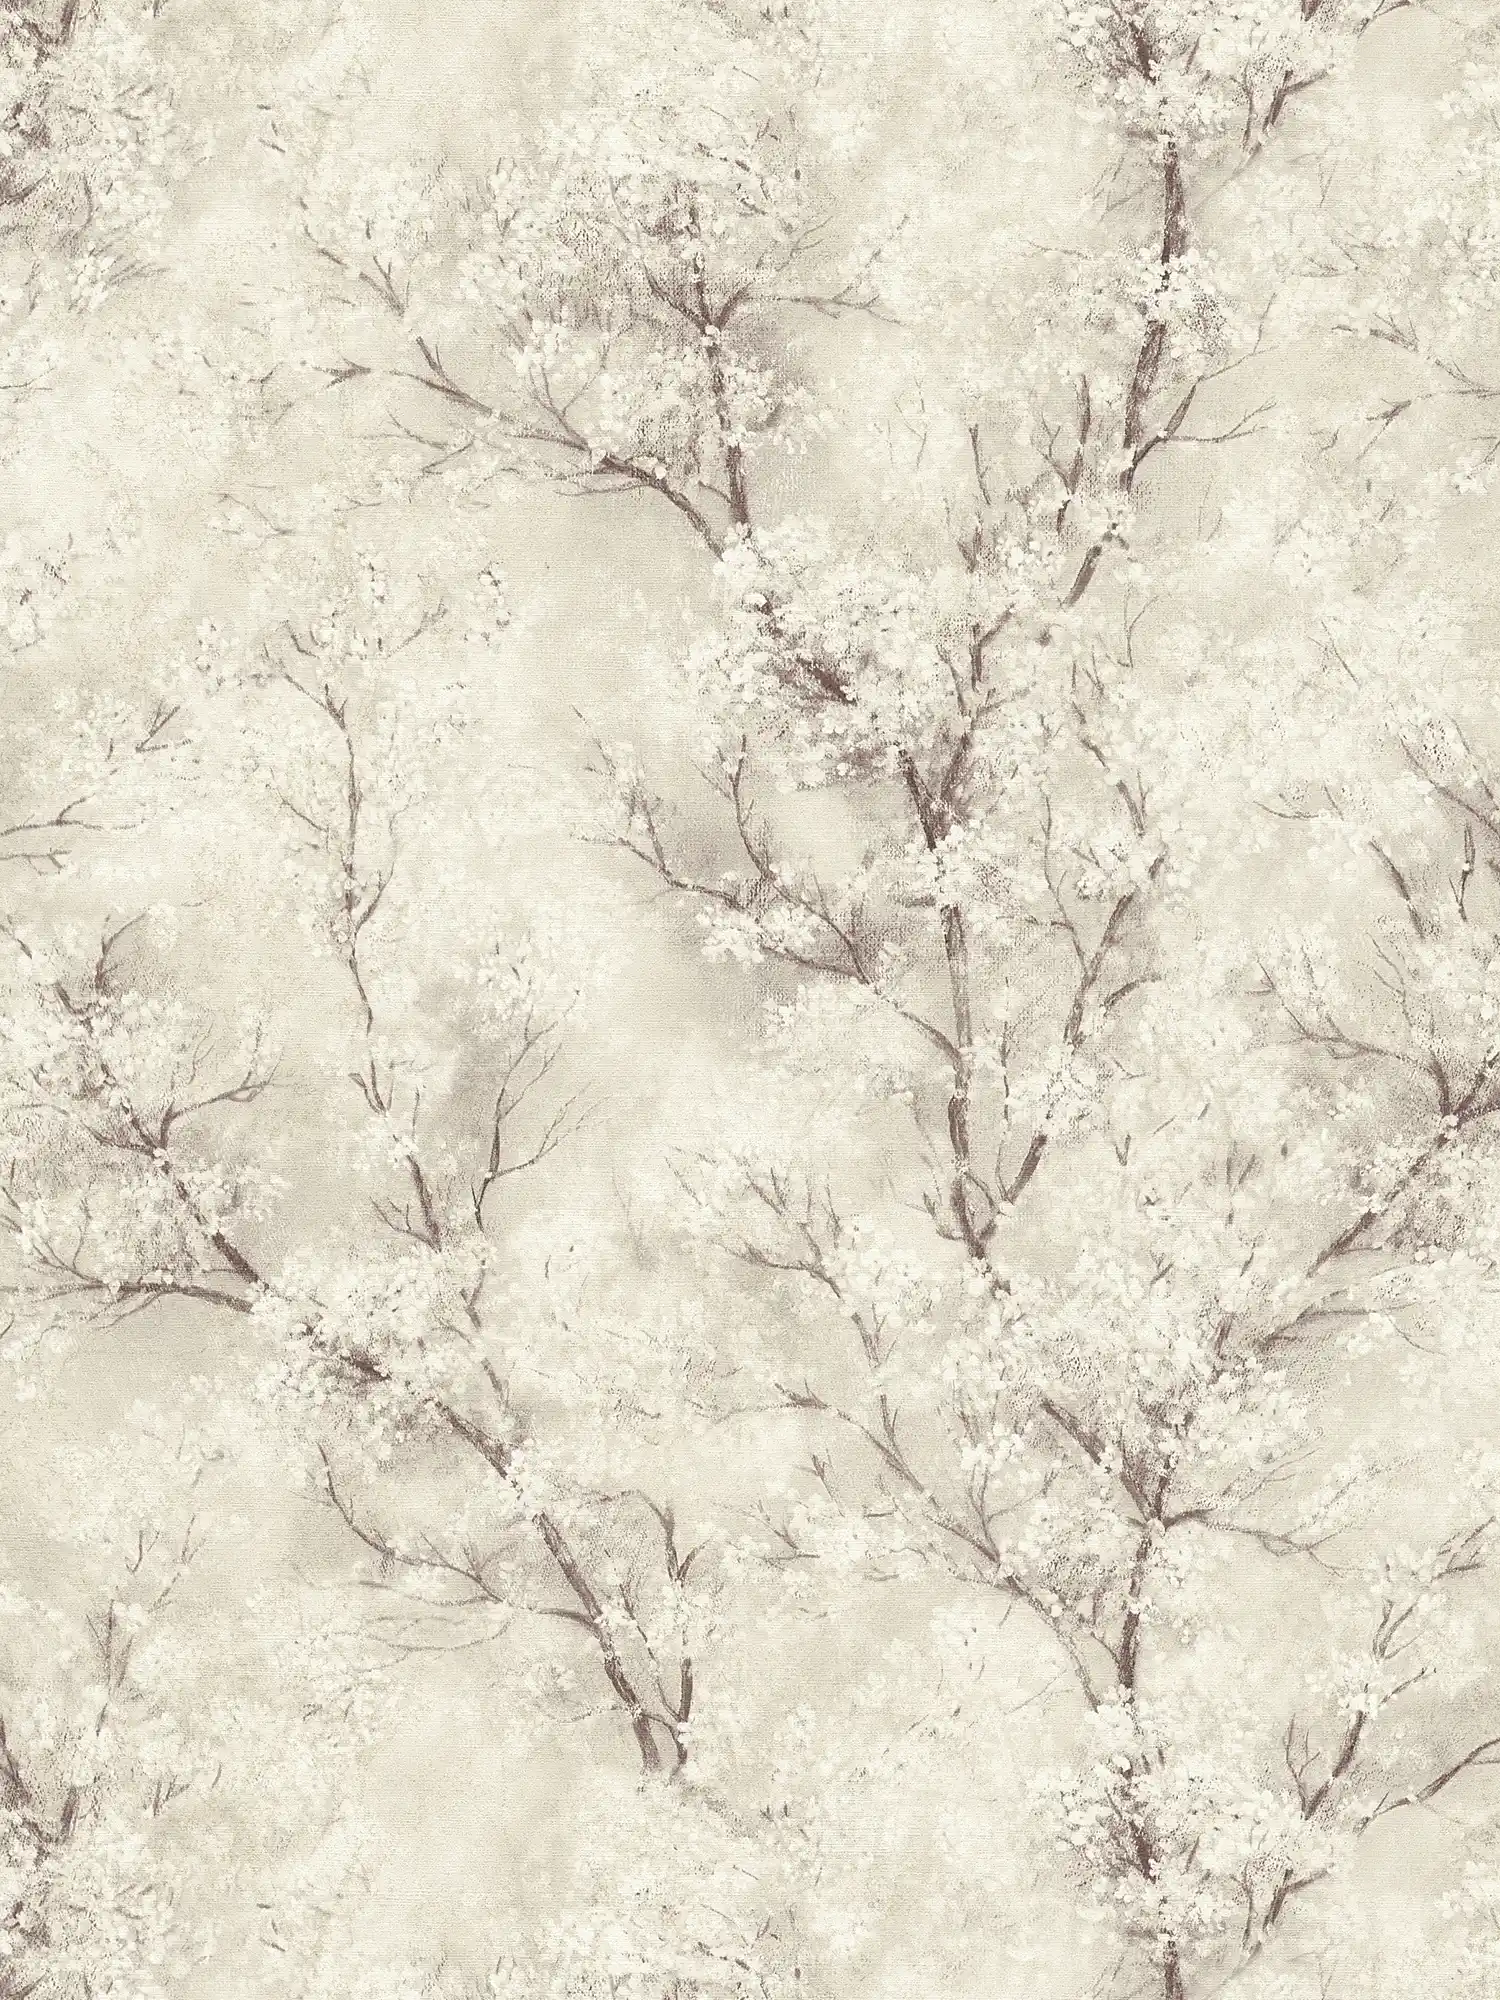         Tapete Kirschblüten Glitzer-Effekt – Creme, Grau, Weiß
    